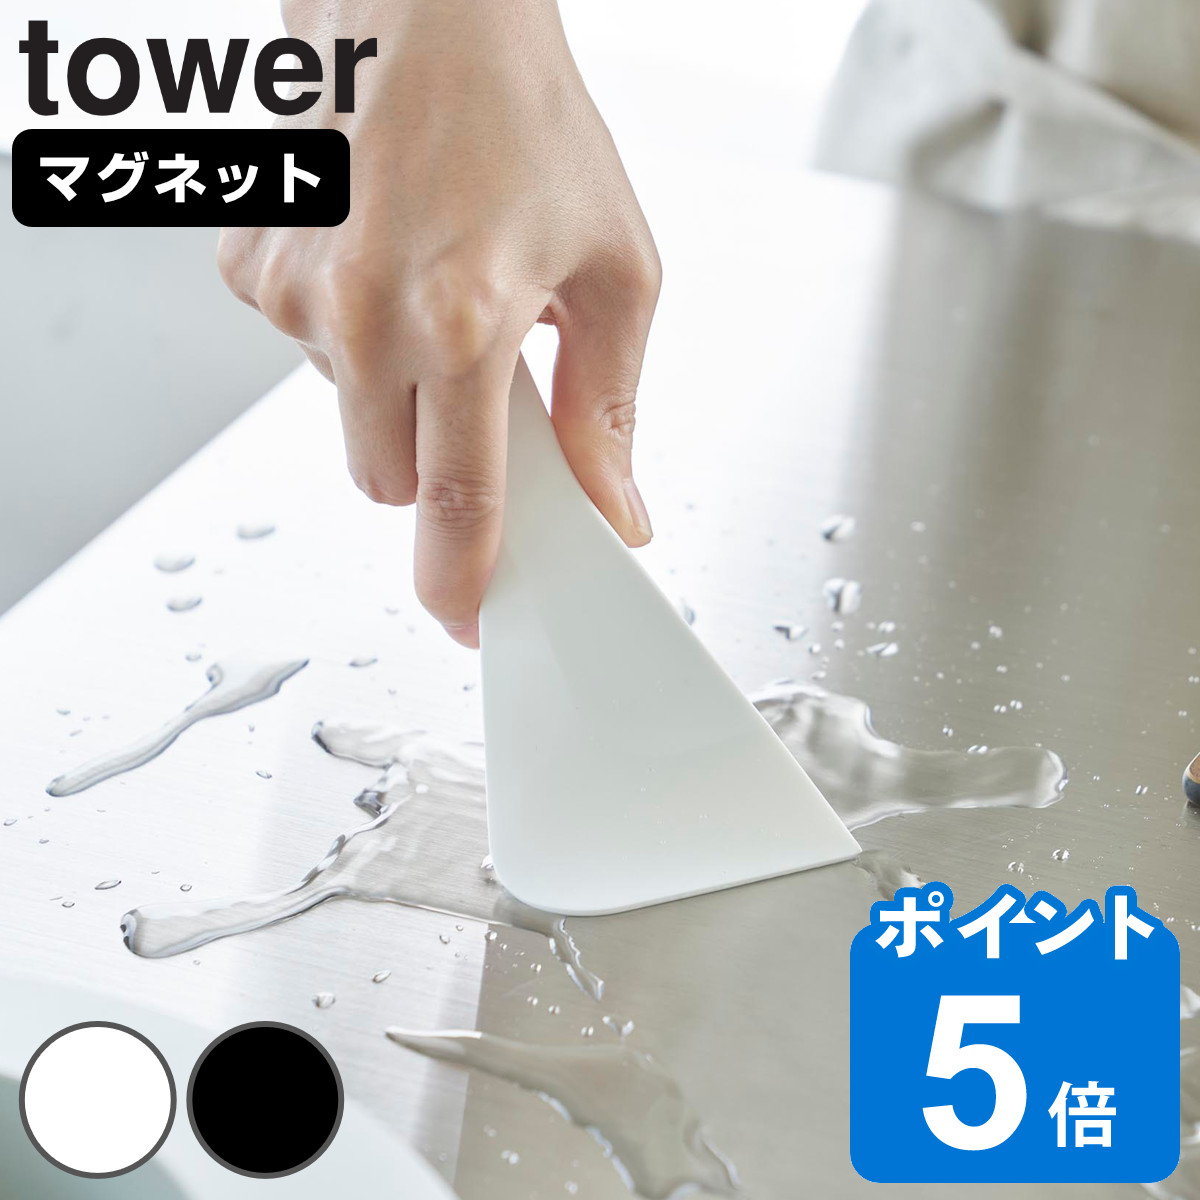 山崎実業 tower マグネットシリコーンスクレーパー タワー